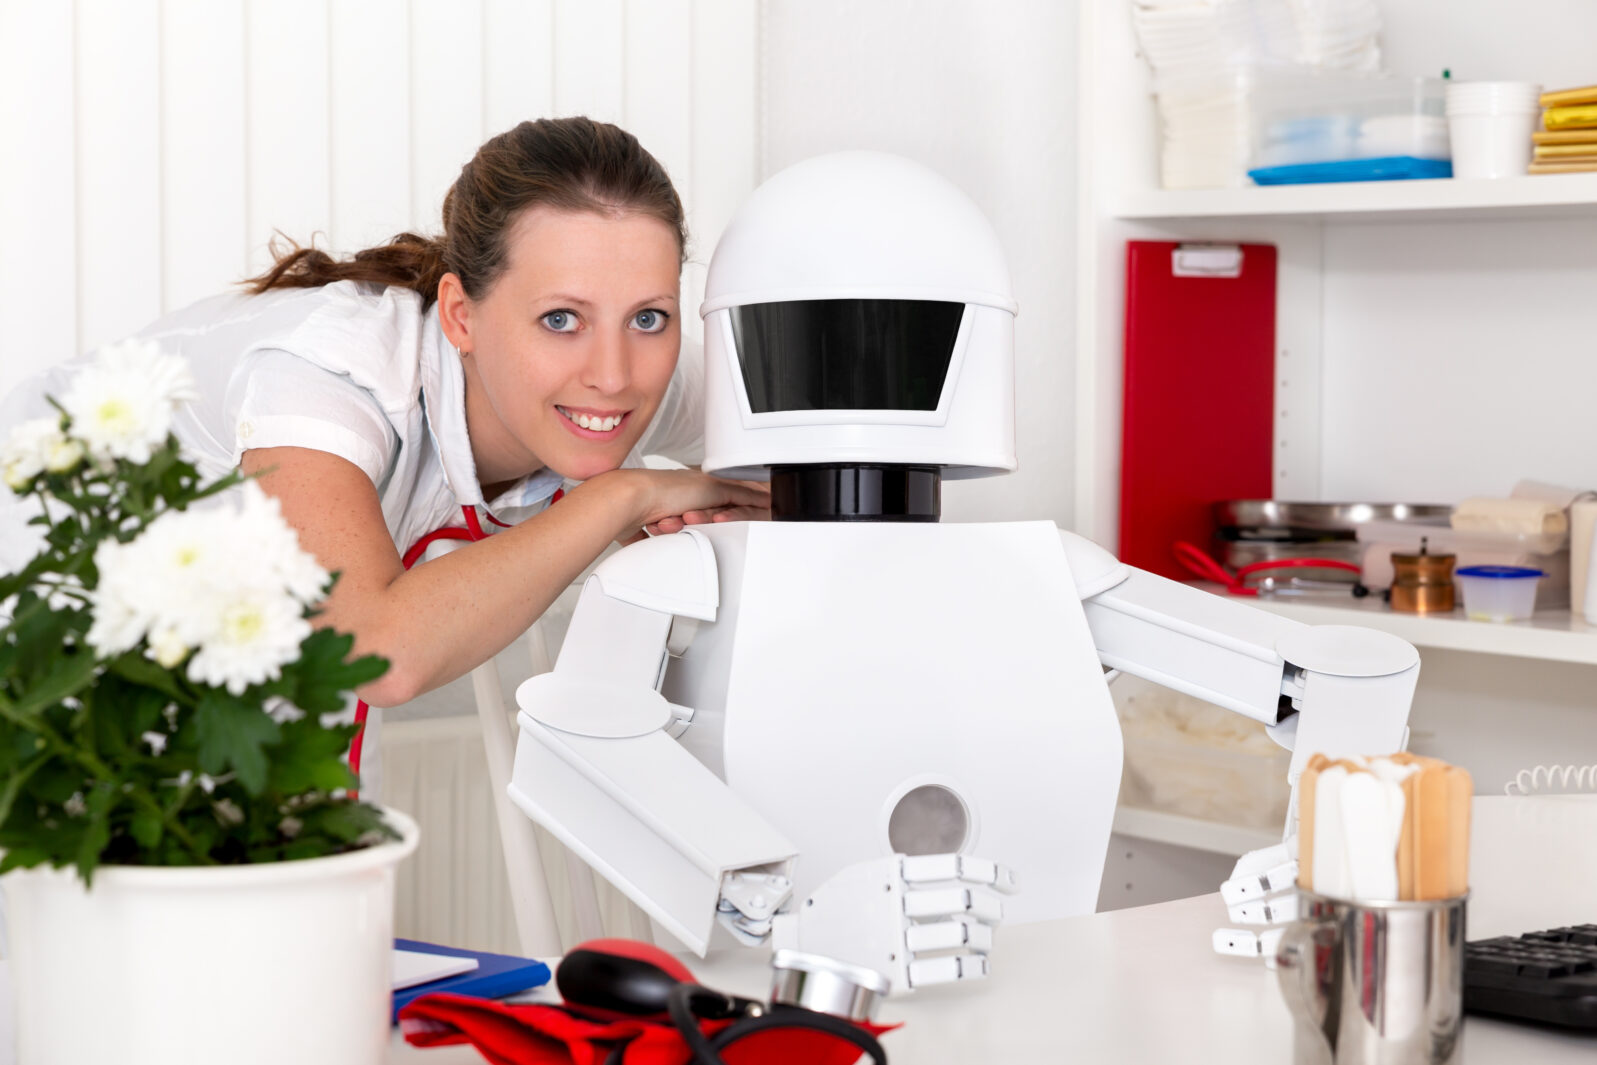 Mensch und Roboter in der Medizin der Zukunft, Beruf Arzt am Arbeitsplatz